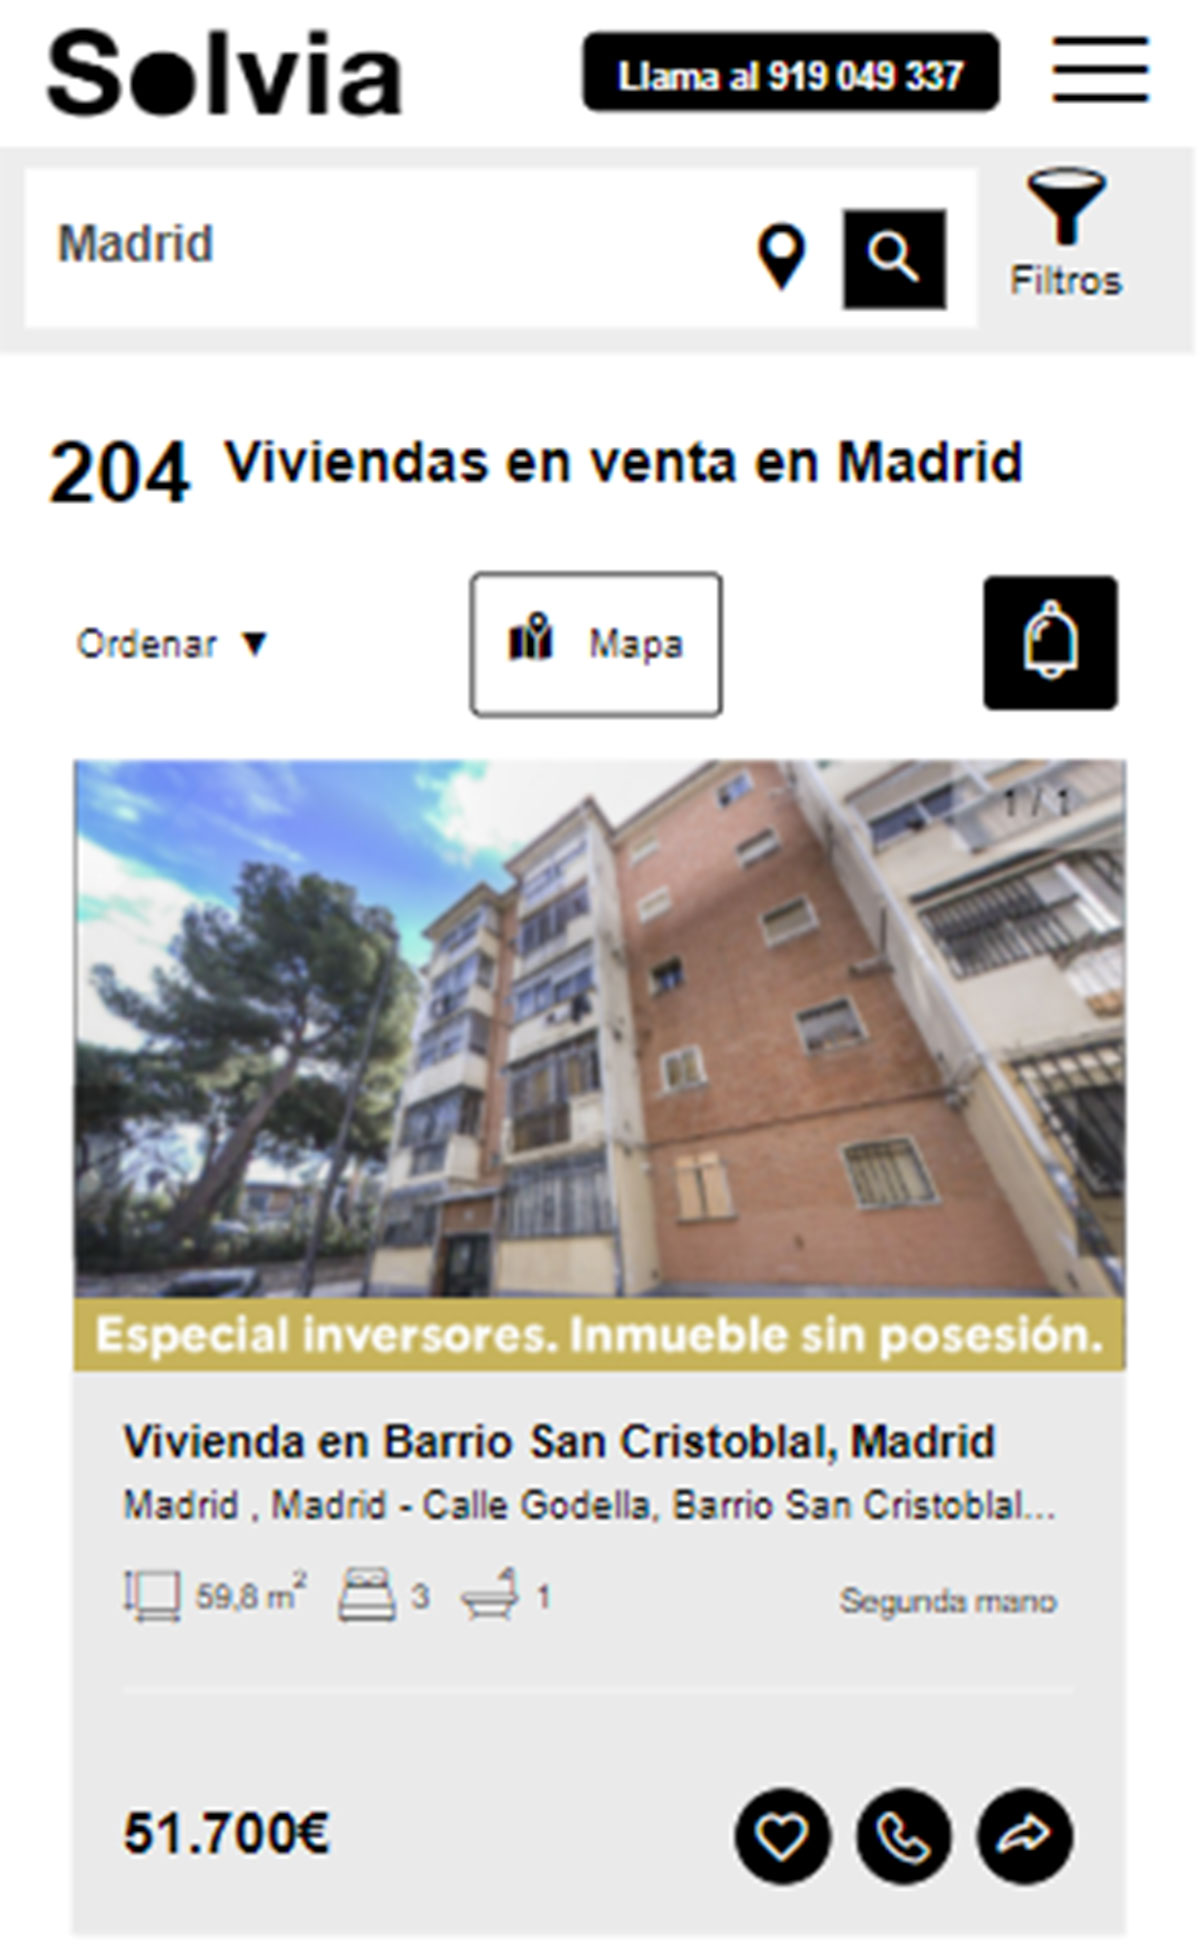 Piso en la ciudad de Madrid por 51.700 euros